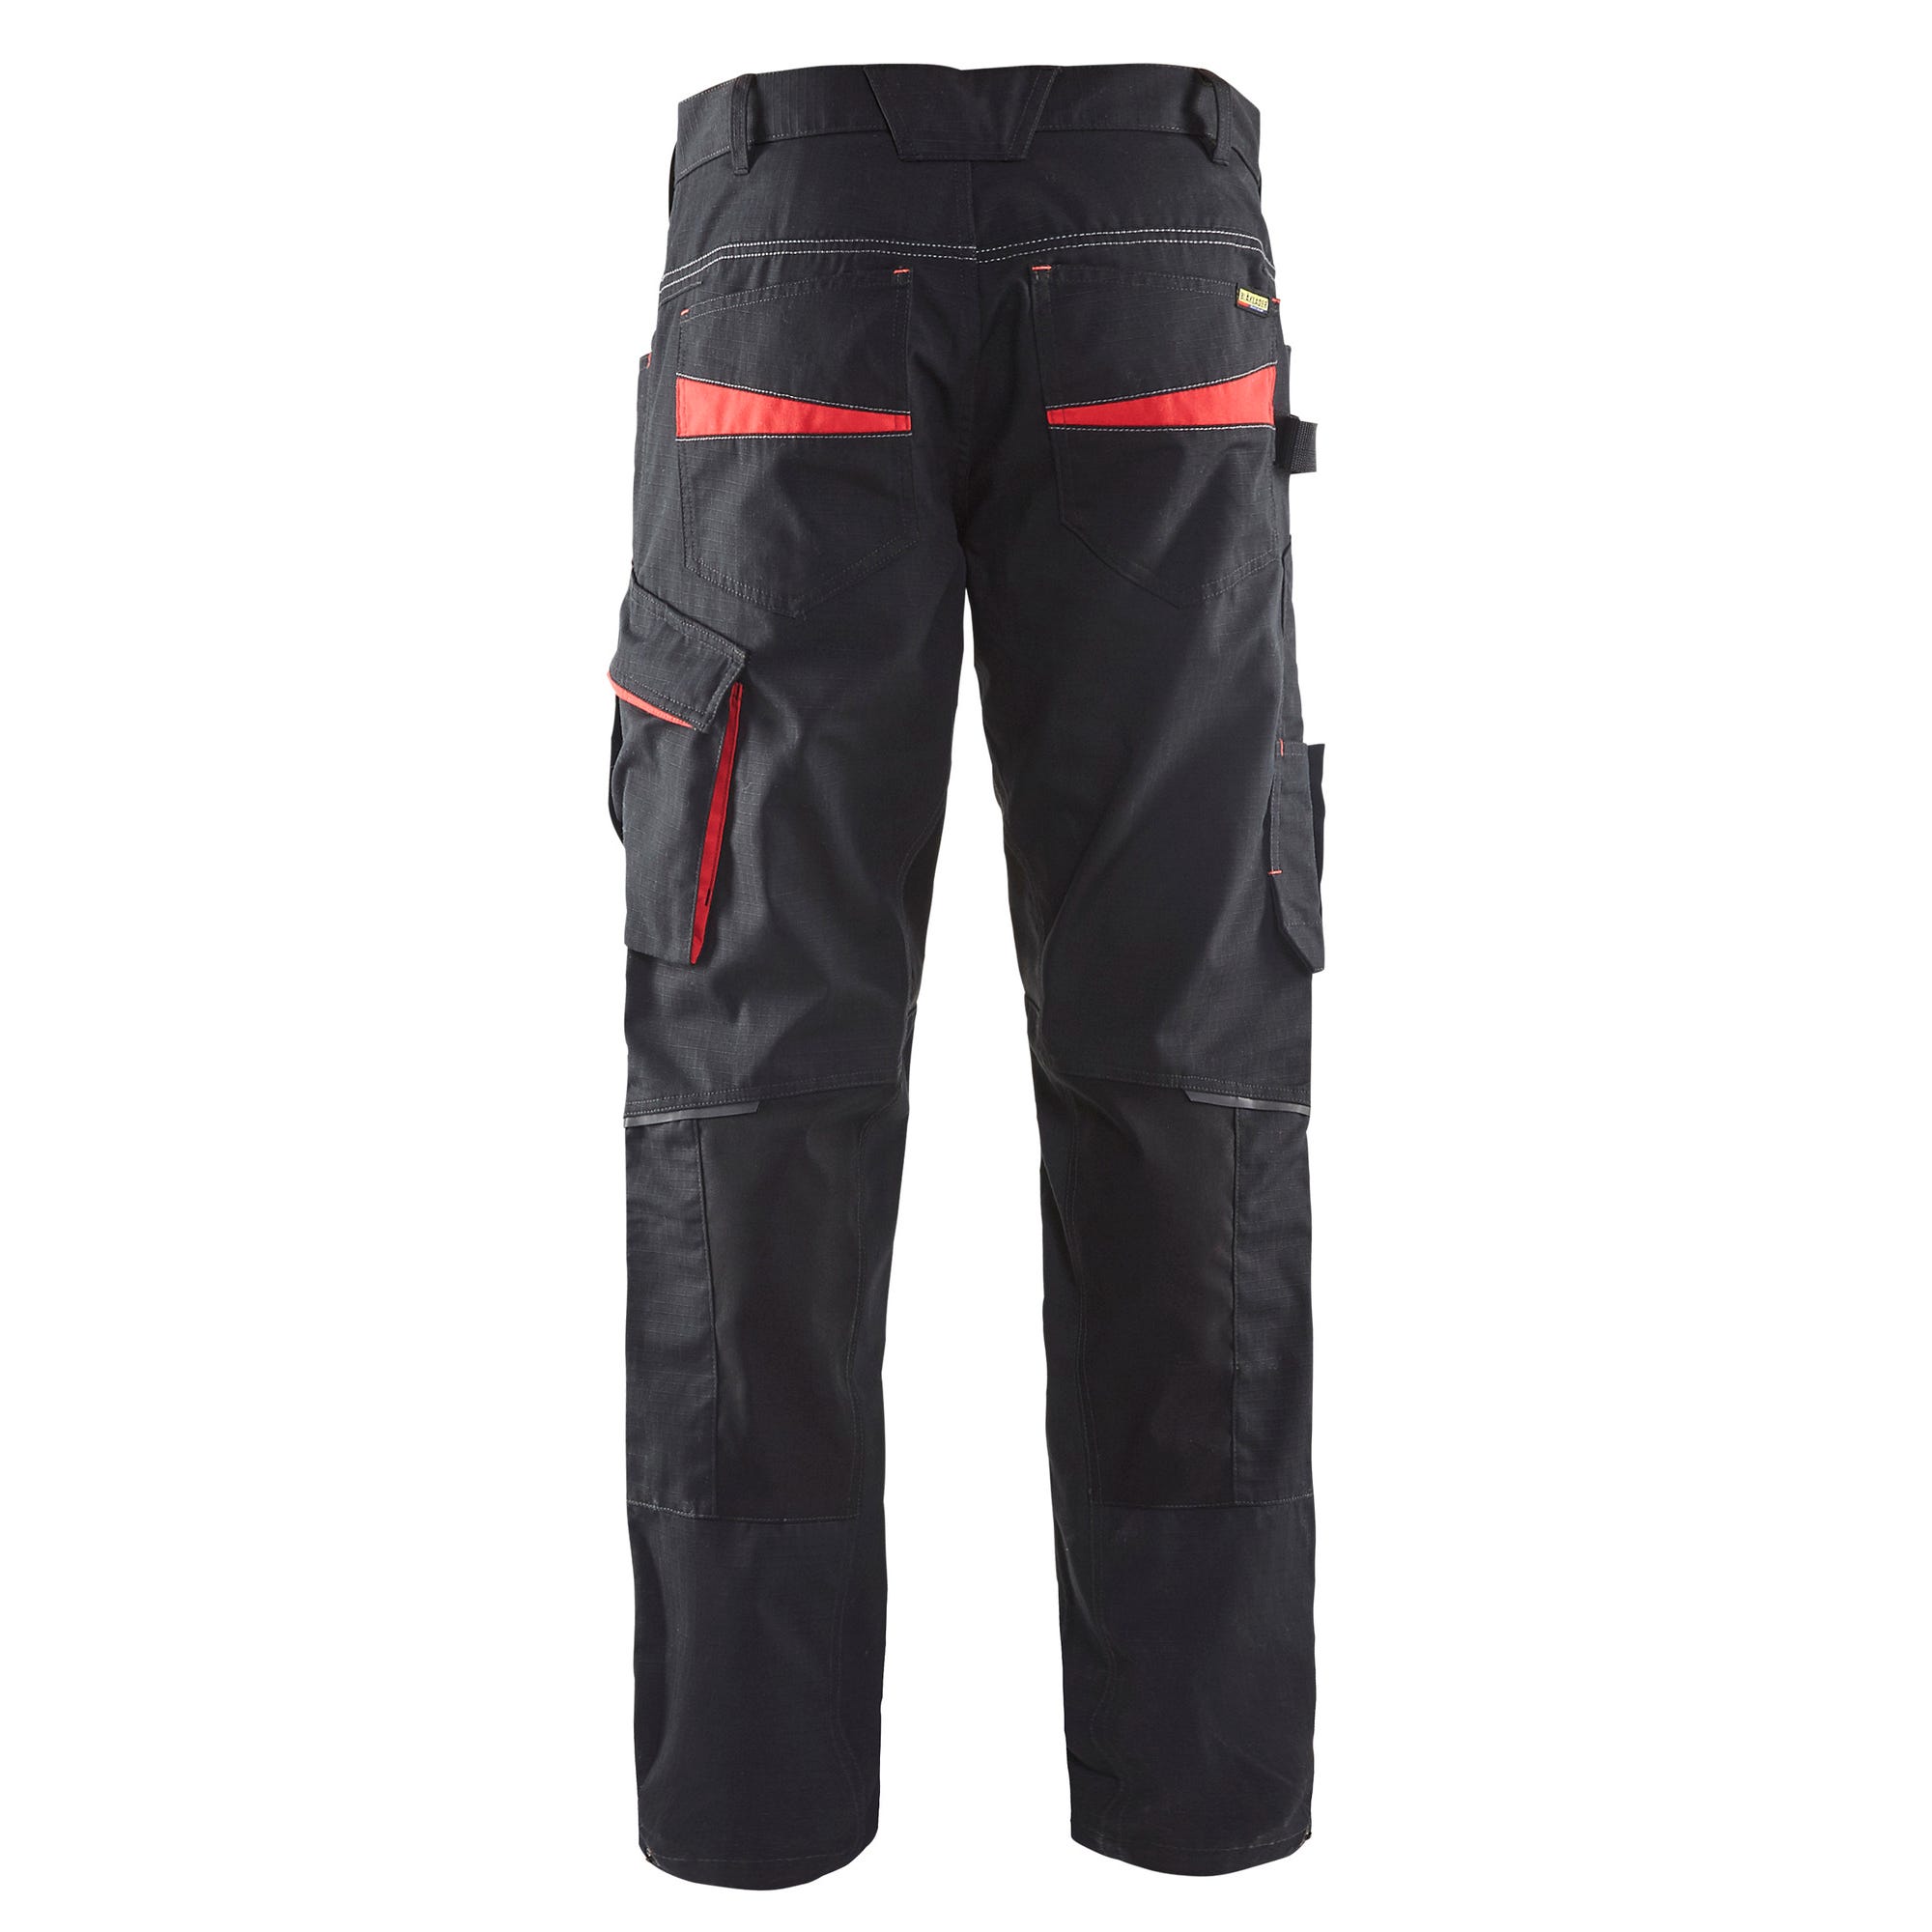 Pantalon de travail stretch Noir/Rouge T.46 1495 - BLAKLADER 1